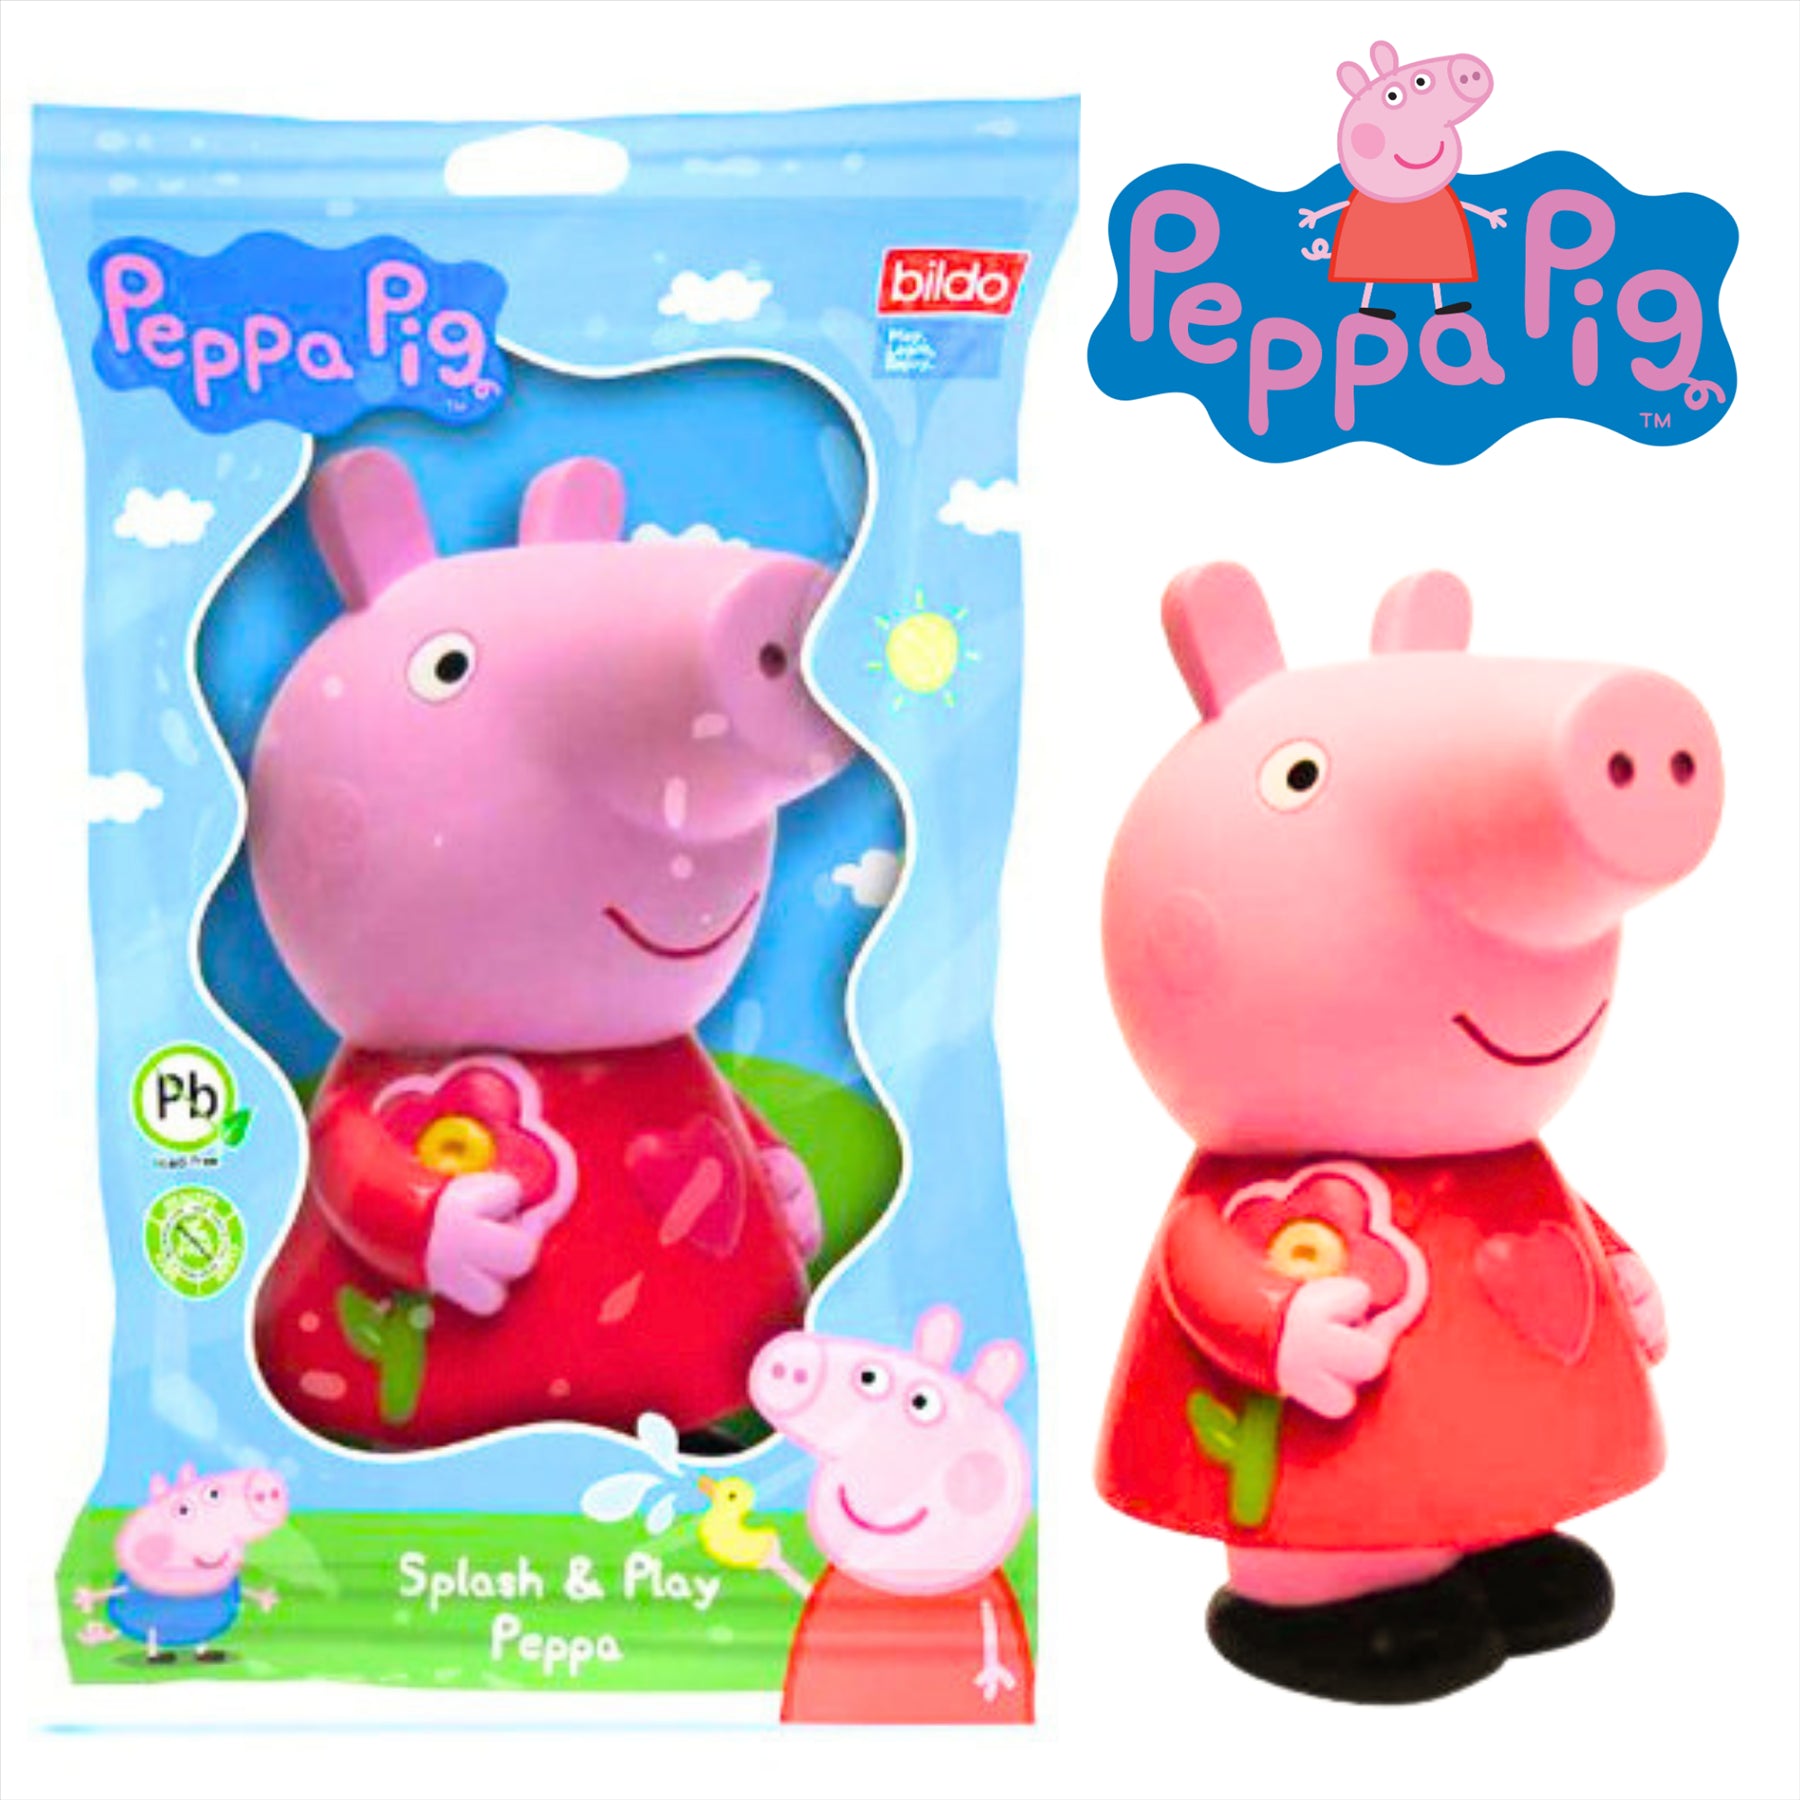 Peppa Pig - Super Soft Gift Quality Plush Gift Sets - 4" 10cm Squishy Peppa & 5" 12cm Splash n Play Peppa - Toptoys2u